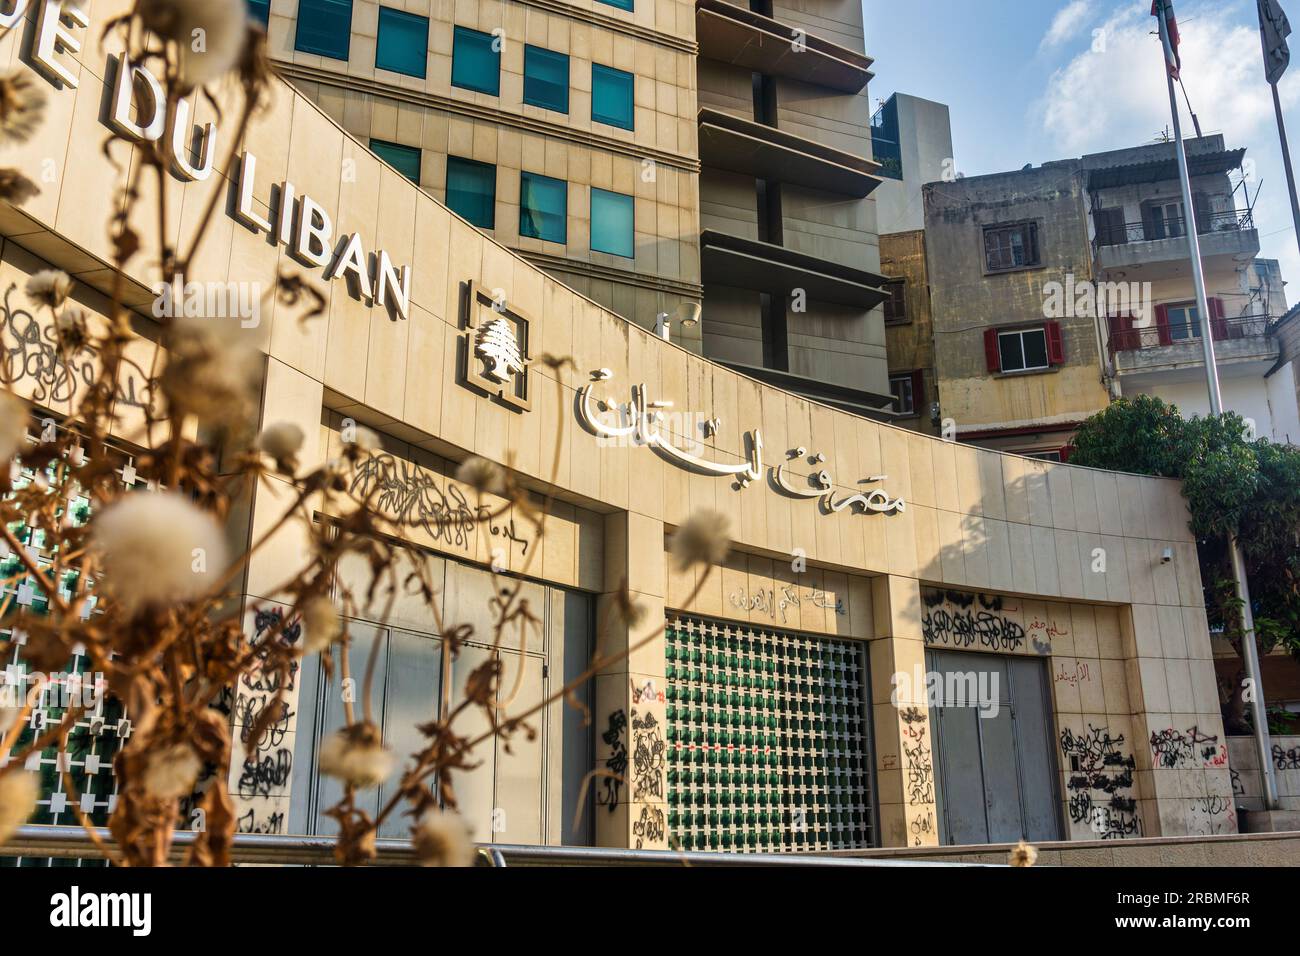 Banque du Liban, banque centrale du Liban vue en juillet 2023. Les murs sont recouverts de graffitis contre le gouverneur, le gouvernement et les dirigeants du pays Banque D'Images